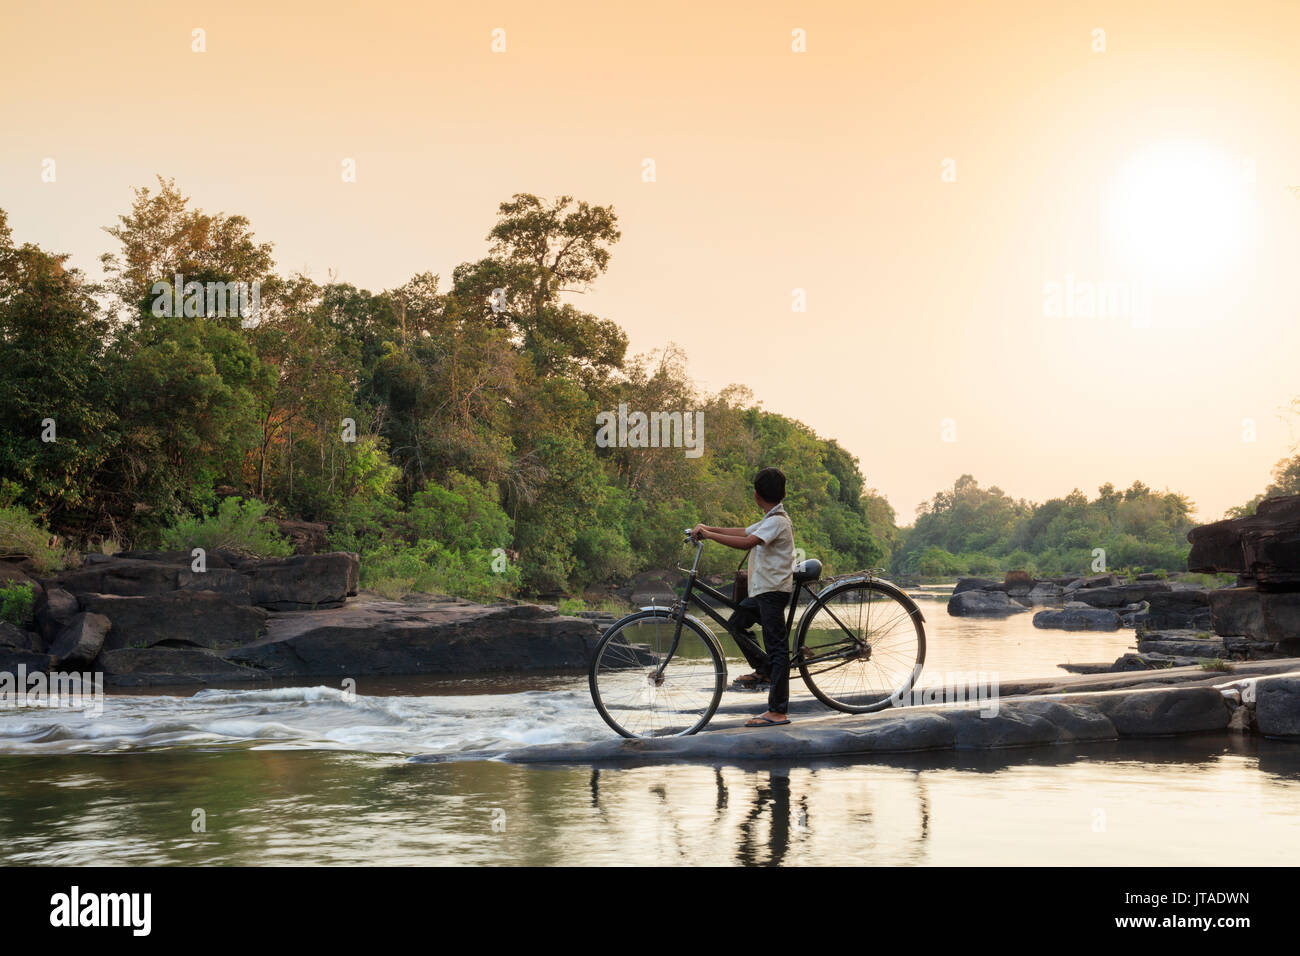 School boy on a bicycle traversant une rivière sur son chemin de l'école, Chi Phat, Koh Kong, le Cambodge, l'Indochine, l'Asie du Sud-Est, Asie Banque D'Images